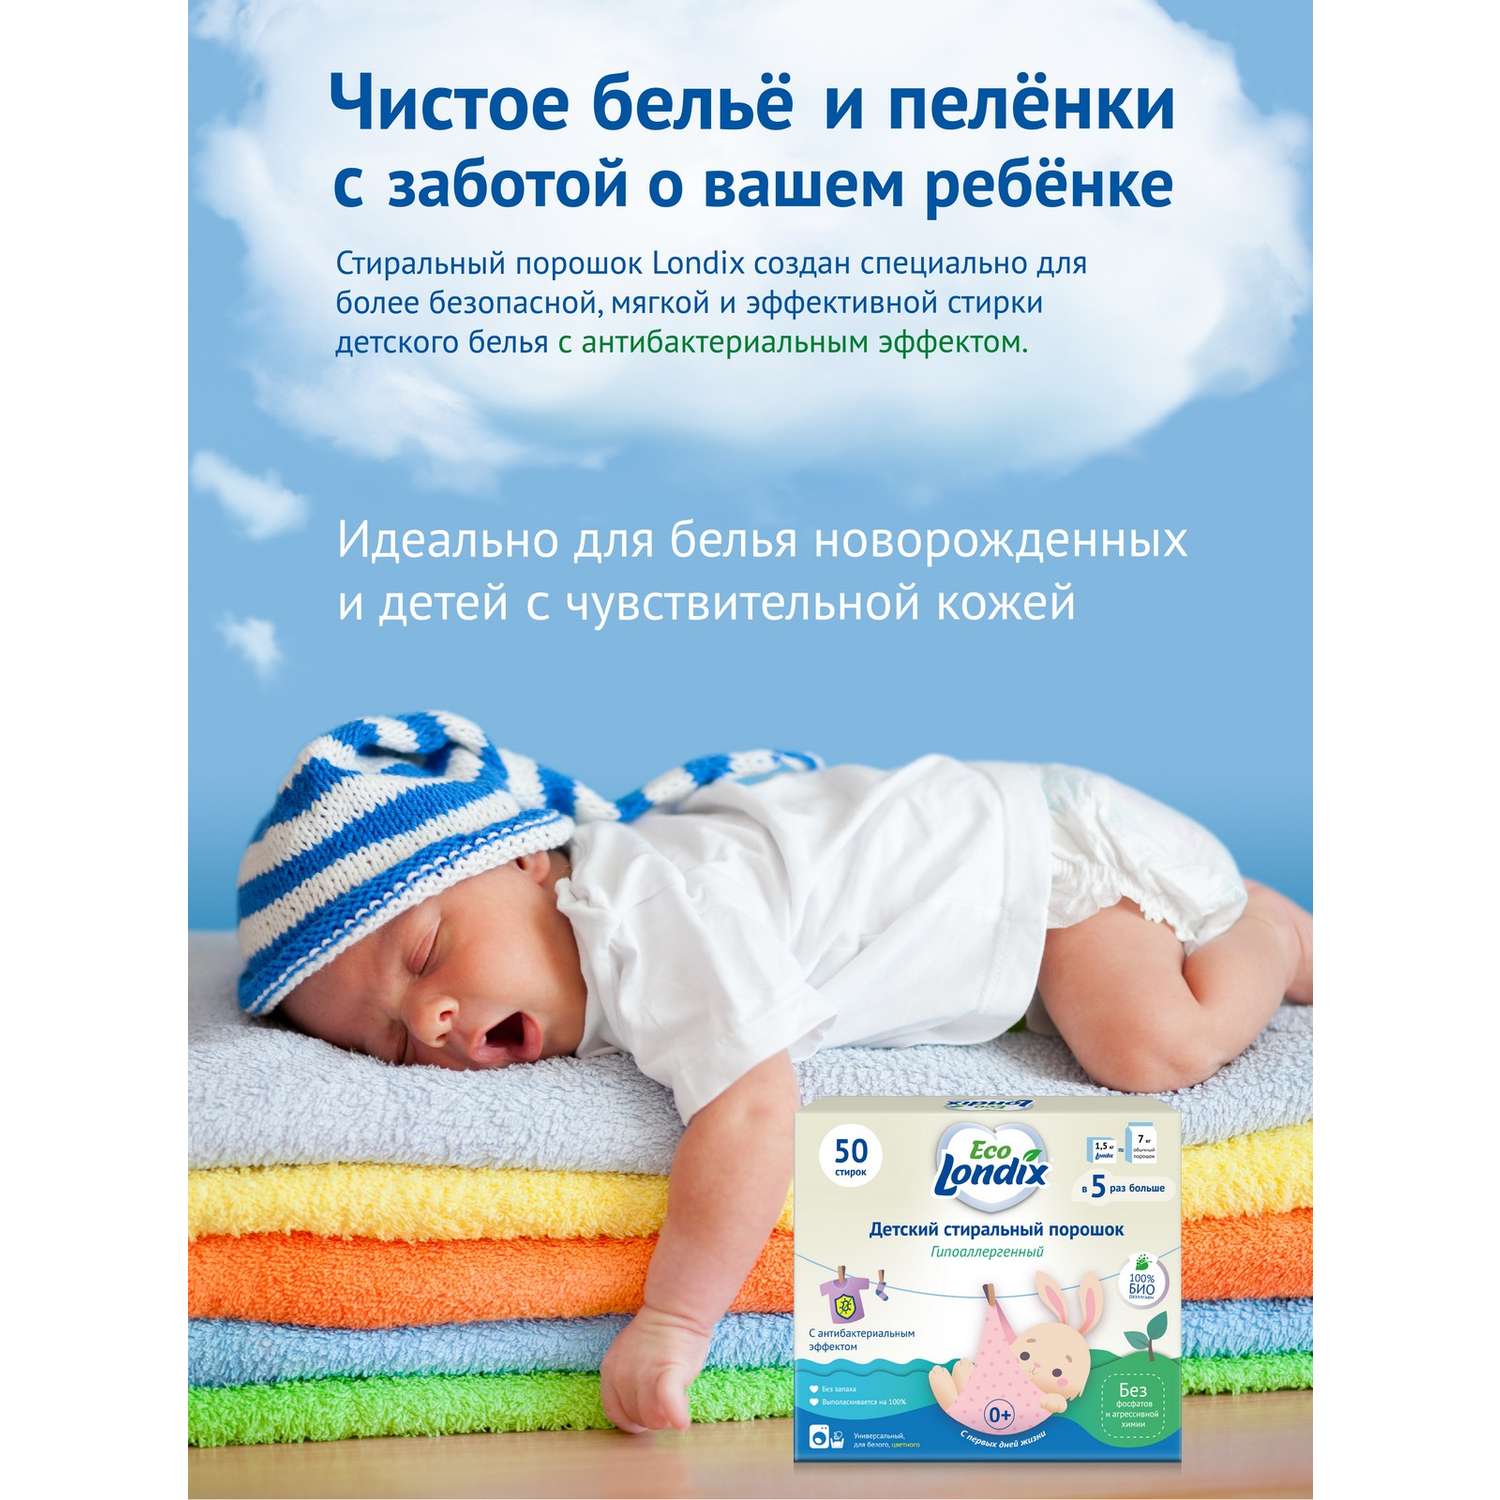 Детский стиральный порошок Londix гипоаллергенный без запаха концентрат 50 стирок (1.5 кг) - фото 2